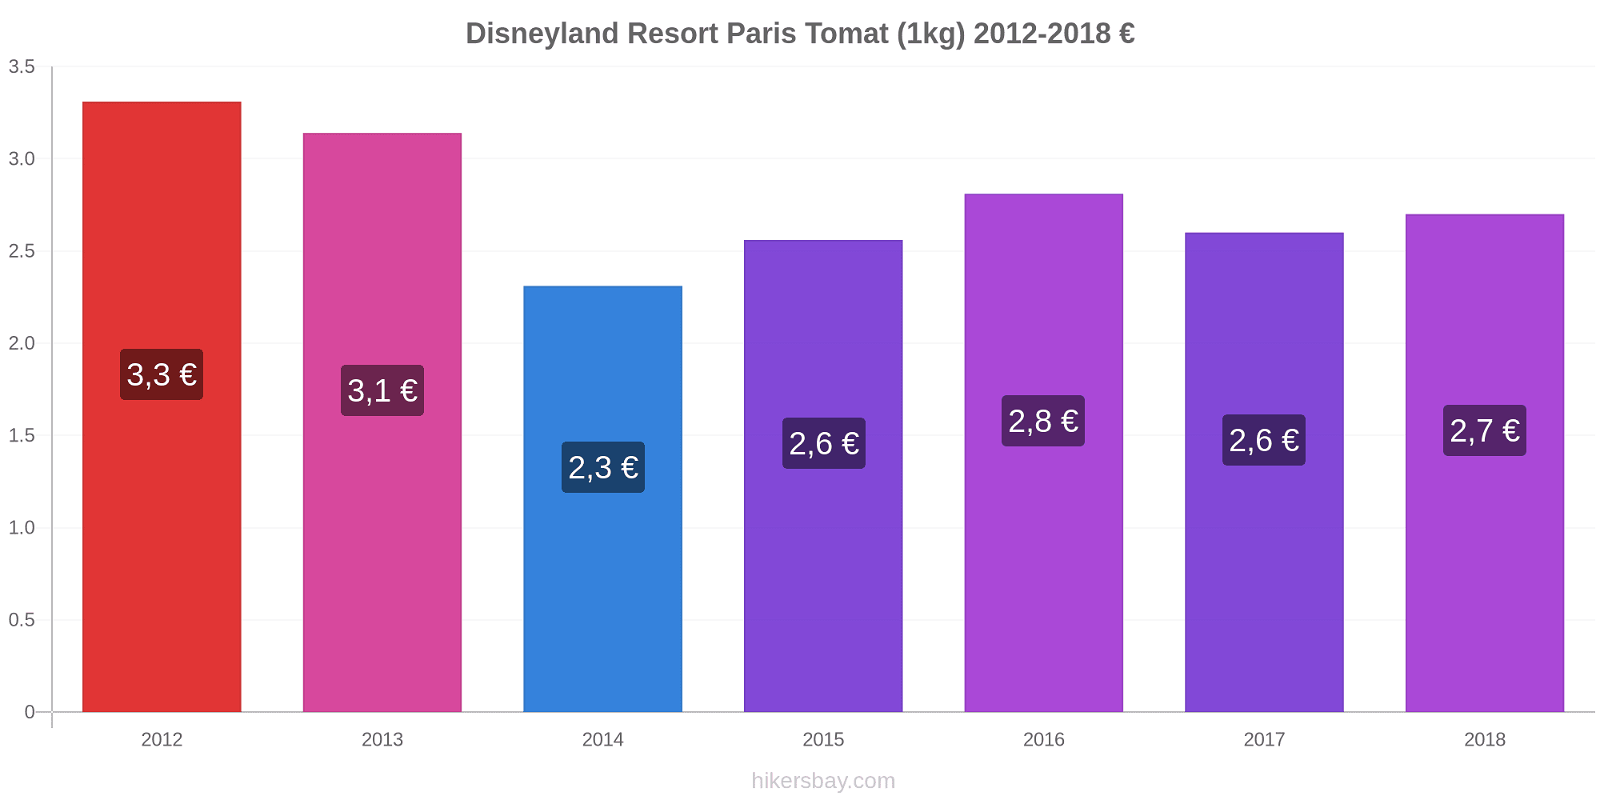 Disneyland Resort Paris prisændringer Tomat (1kg) hikersbay.com